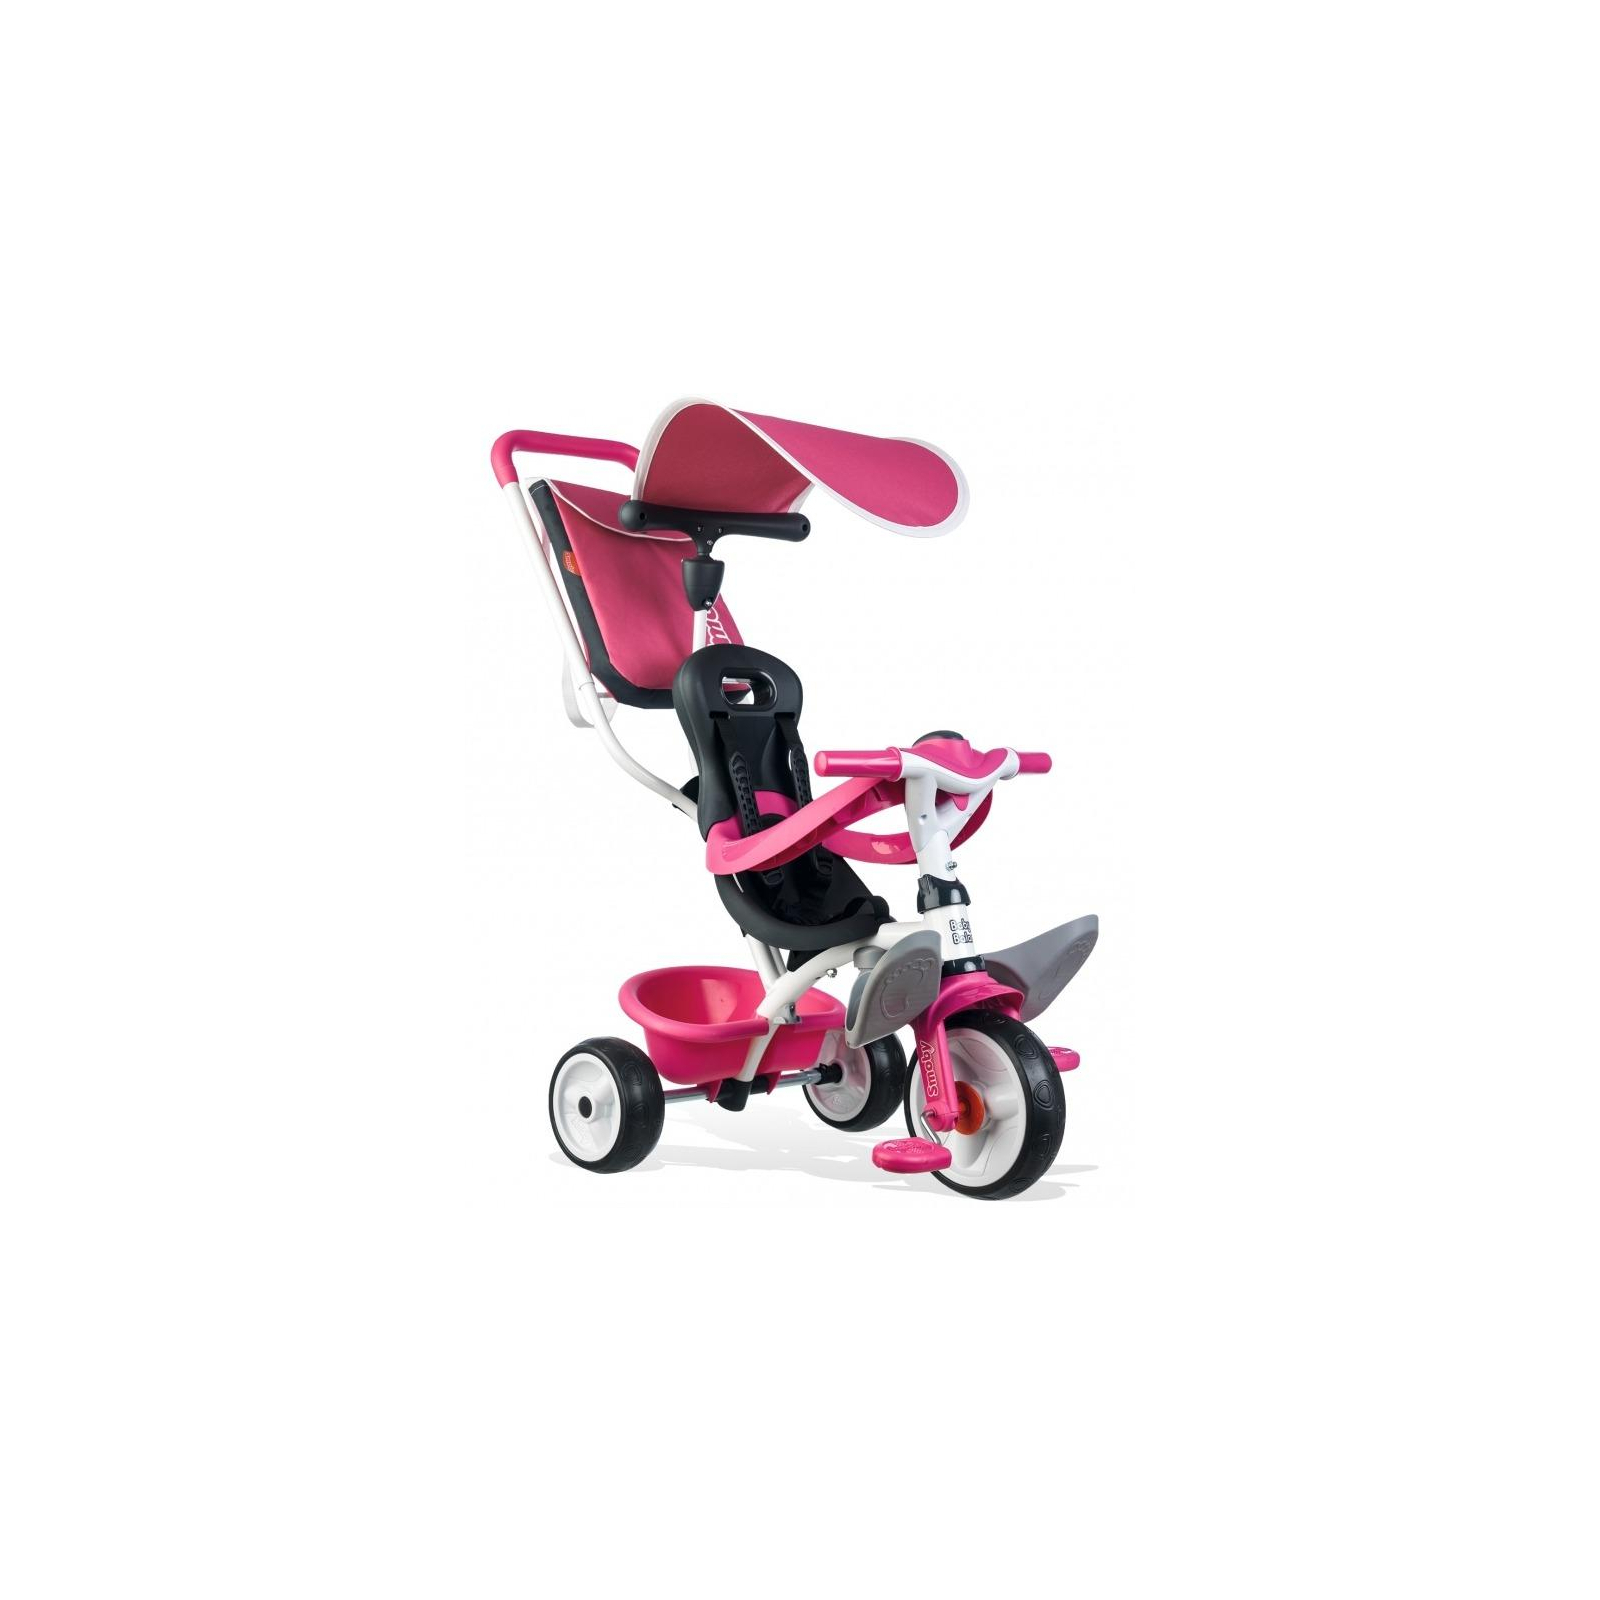 Детский велосипед Smoby с козырьком, багажником и сумкой Розовый (741101)